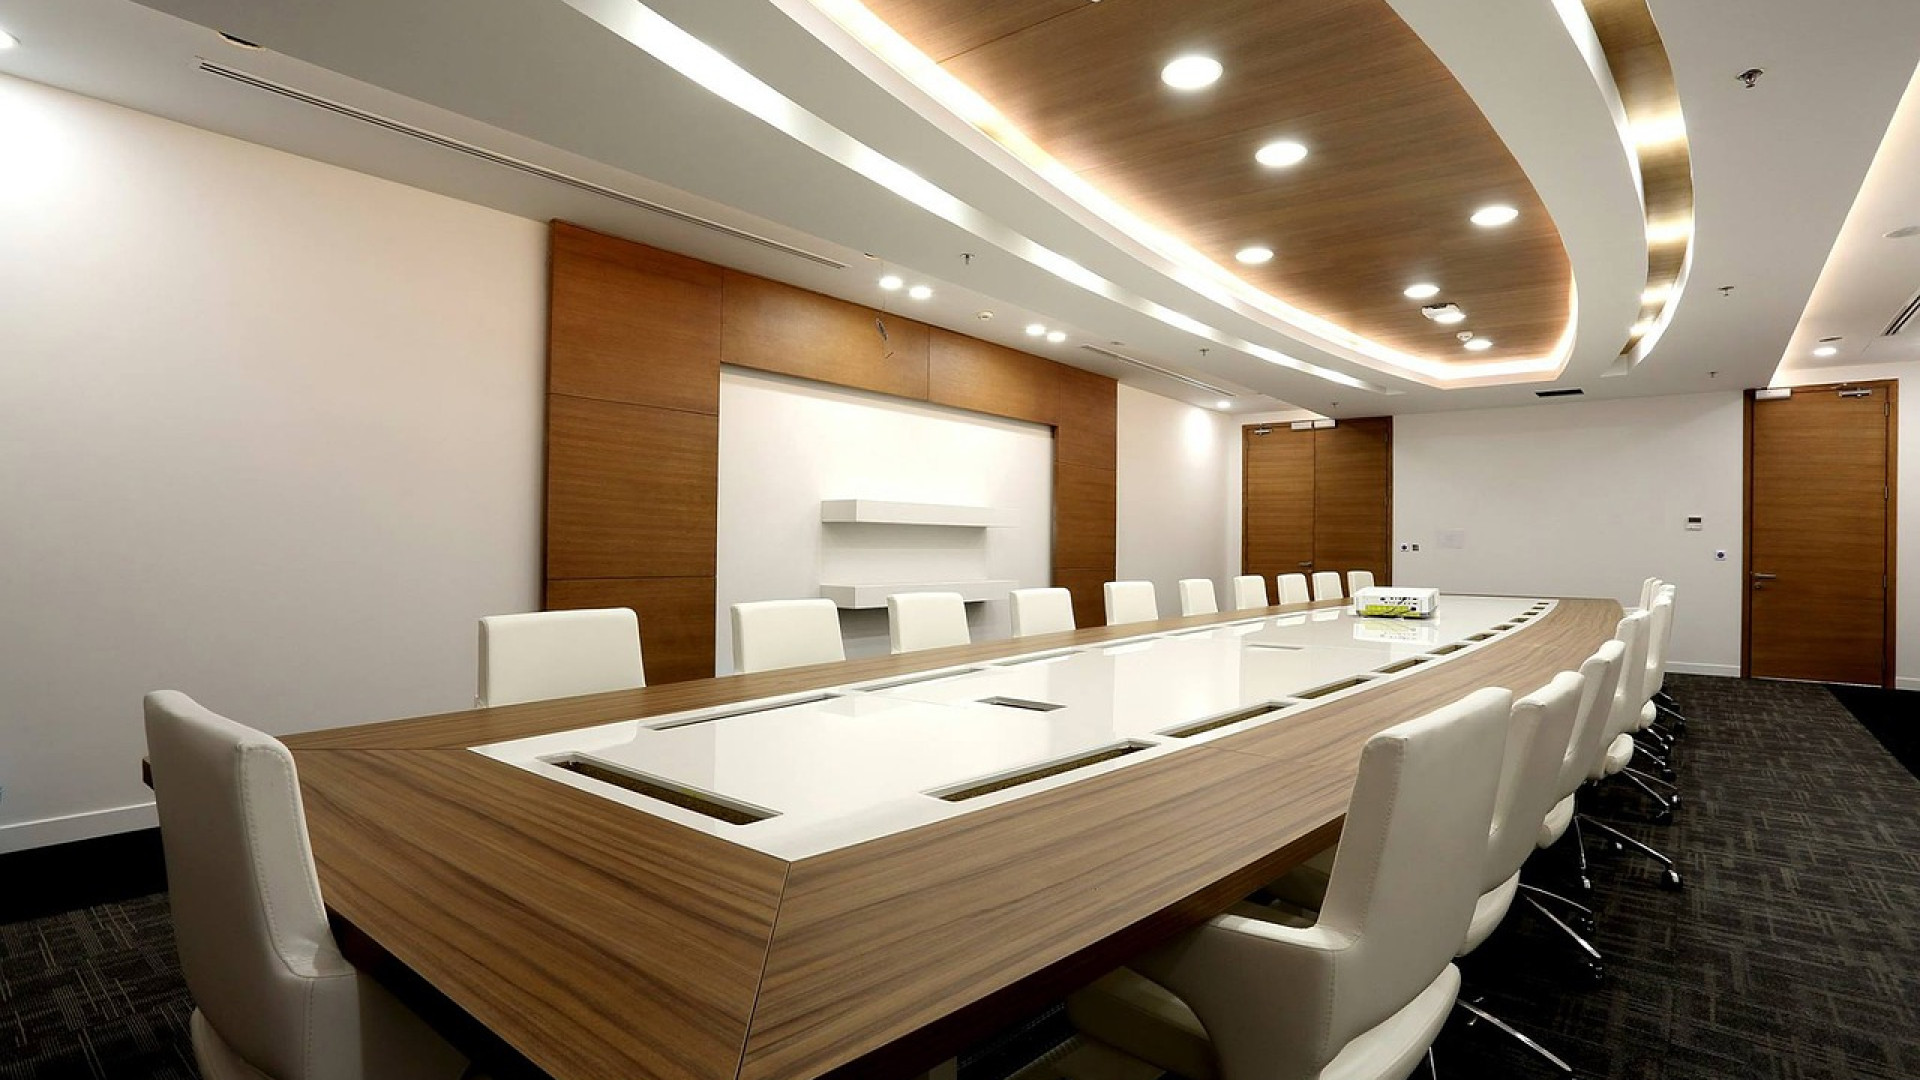 Salle de réunion : choisissez du mobilier design et personnalisable !